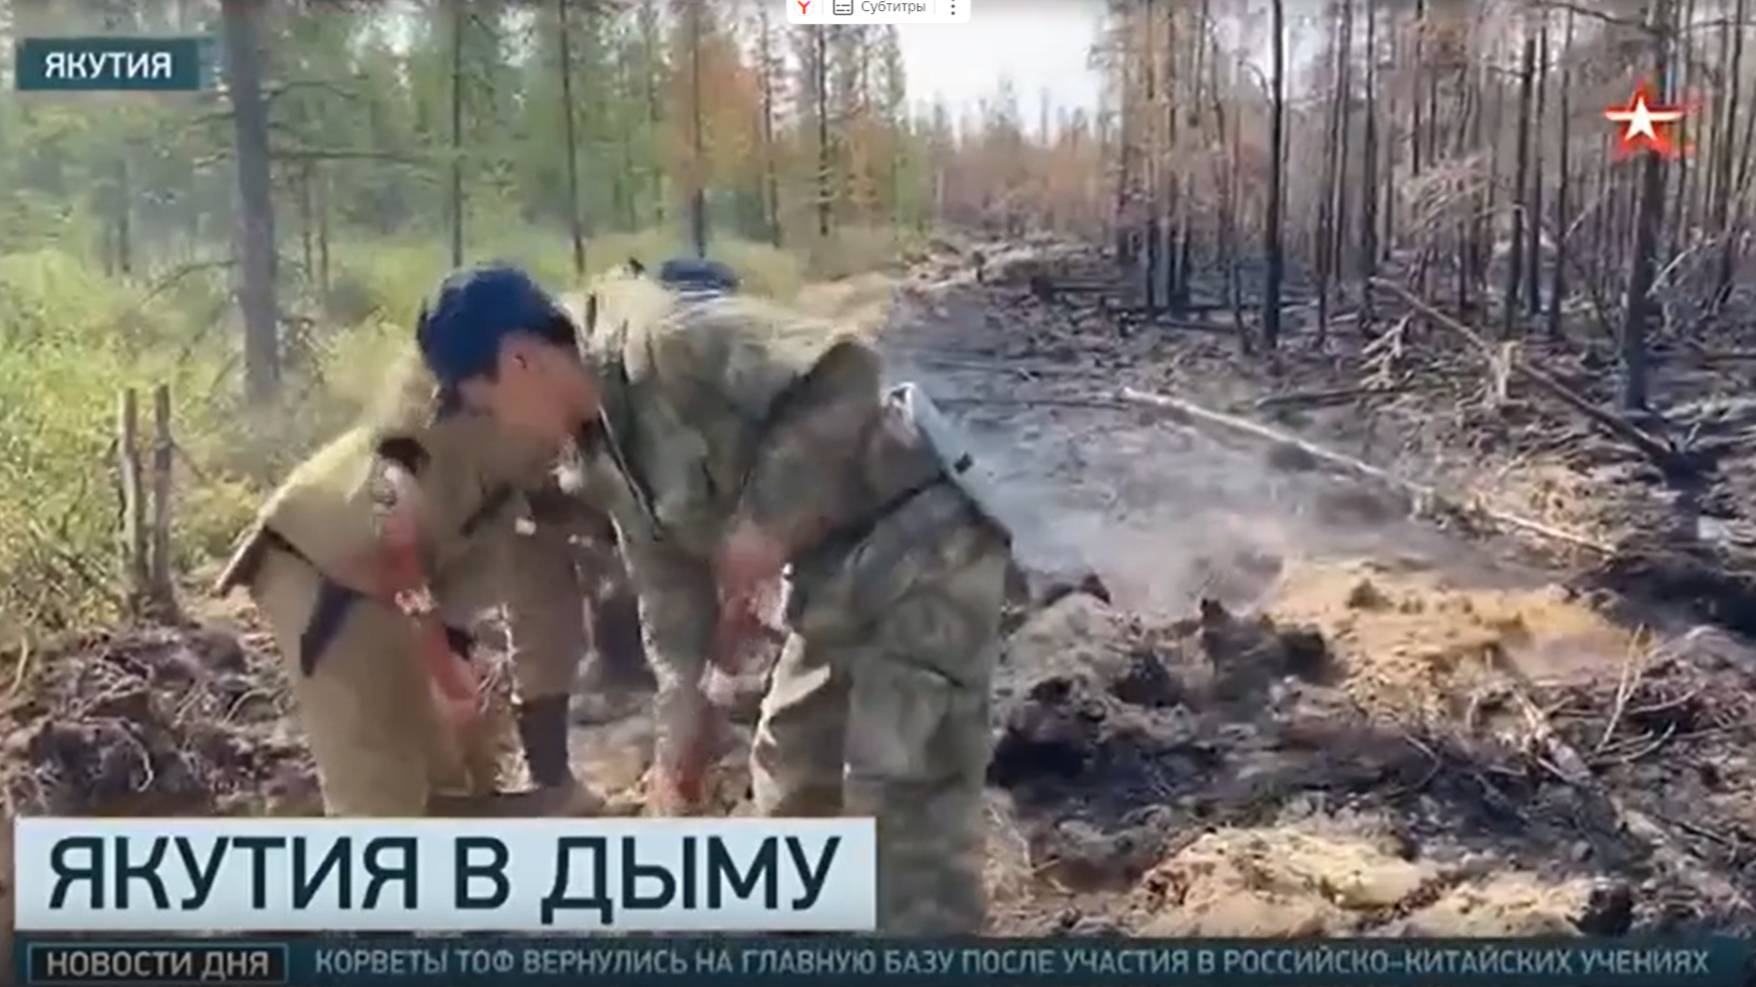 ТК Звезда # Новости_Рост площади лесных пожаров в Якутии